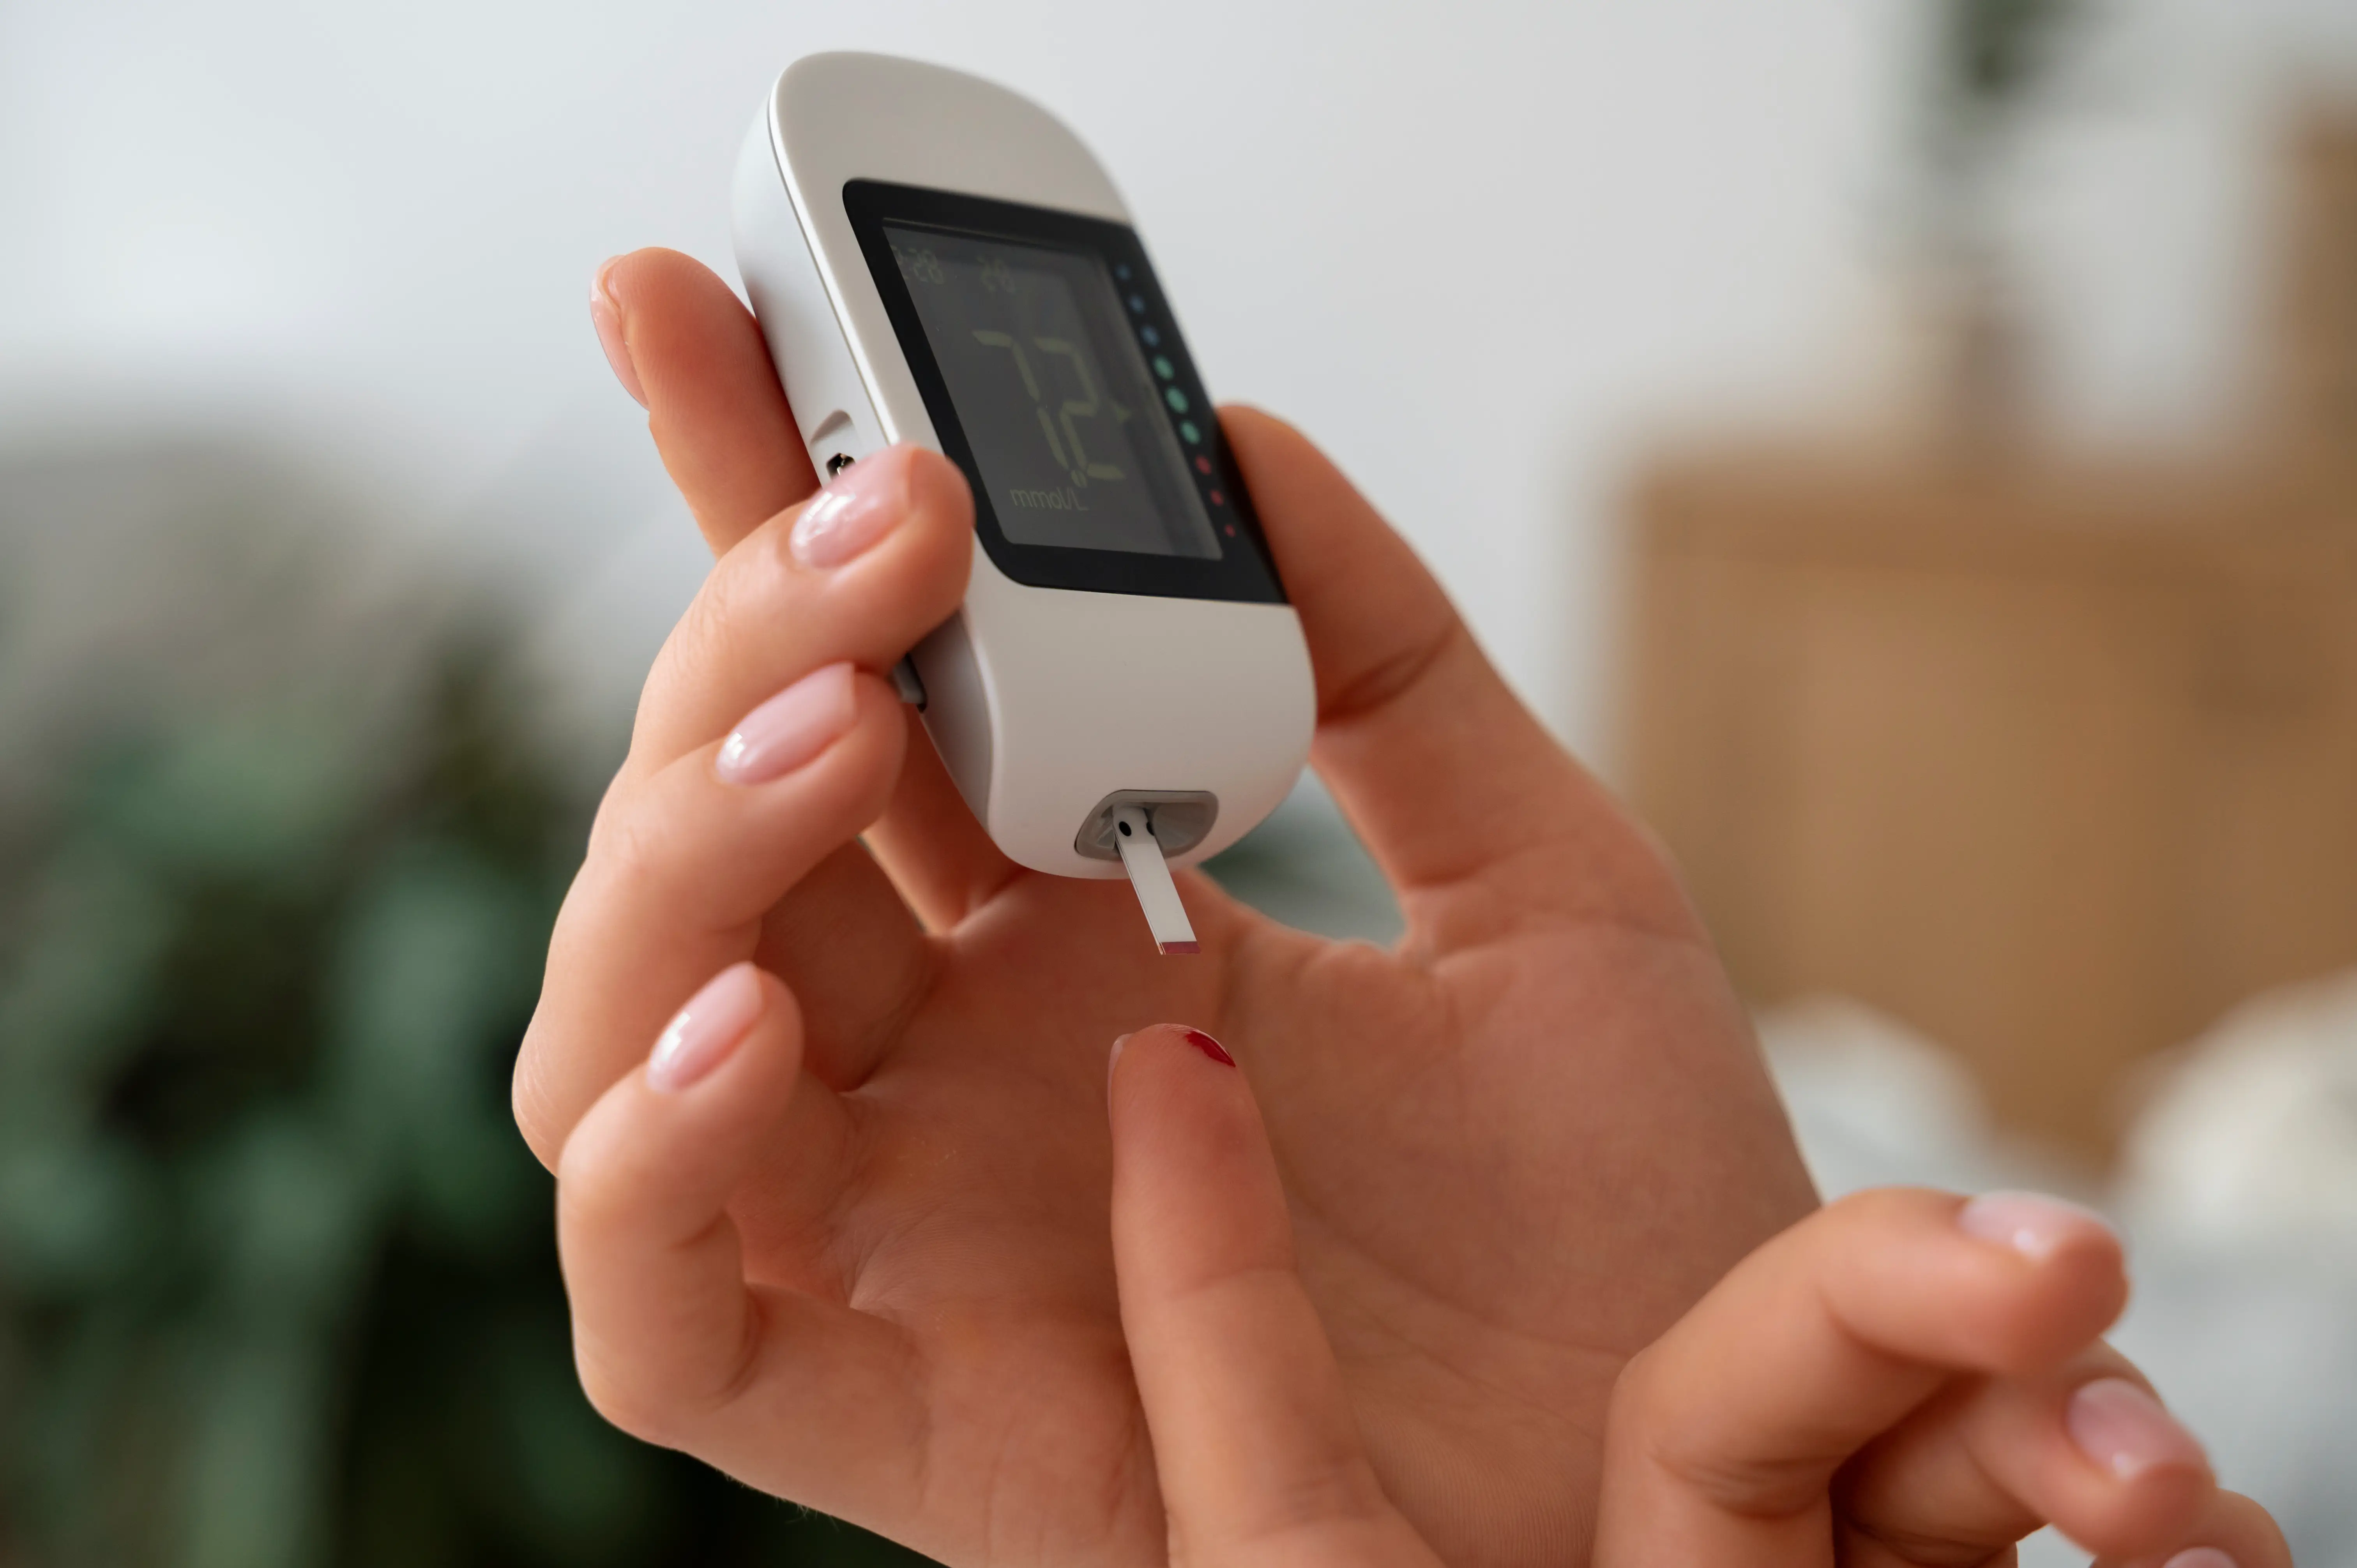 Imagem ilustrativa de pessoa medindo glicemia para verificar diabetes.